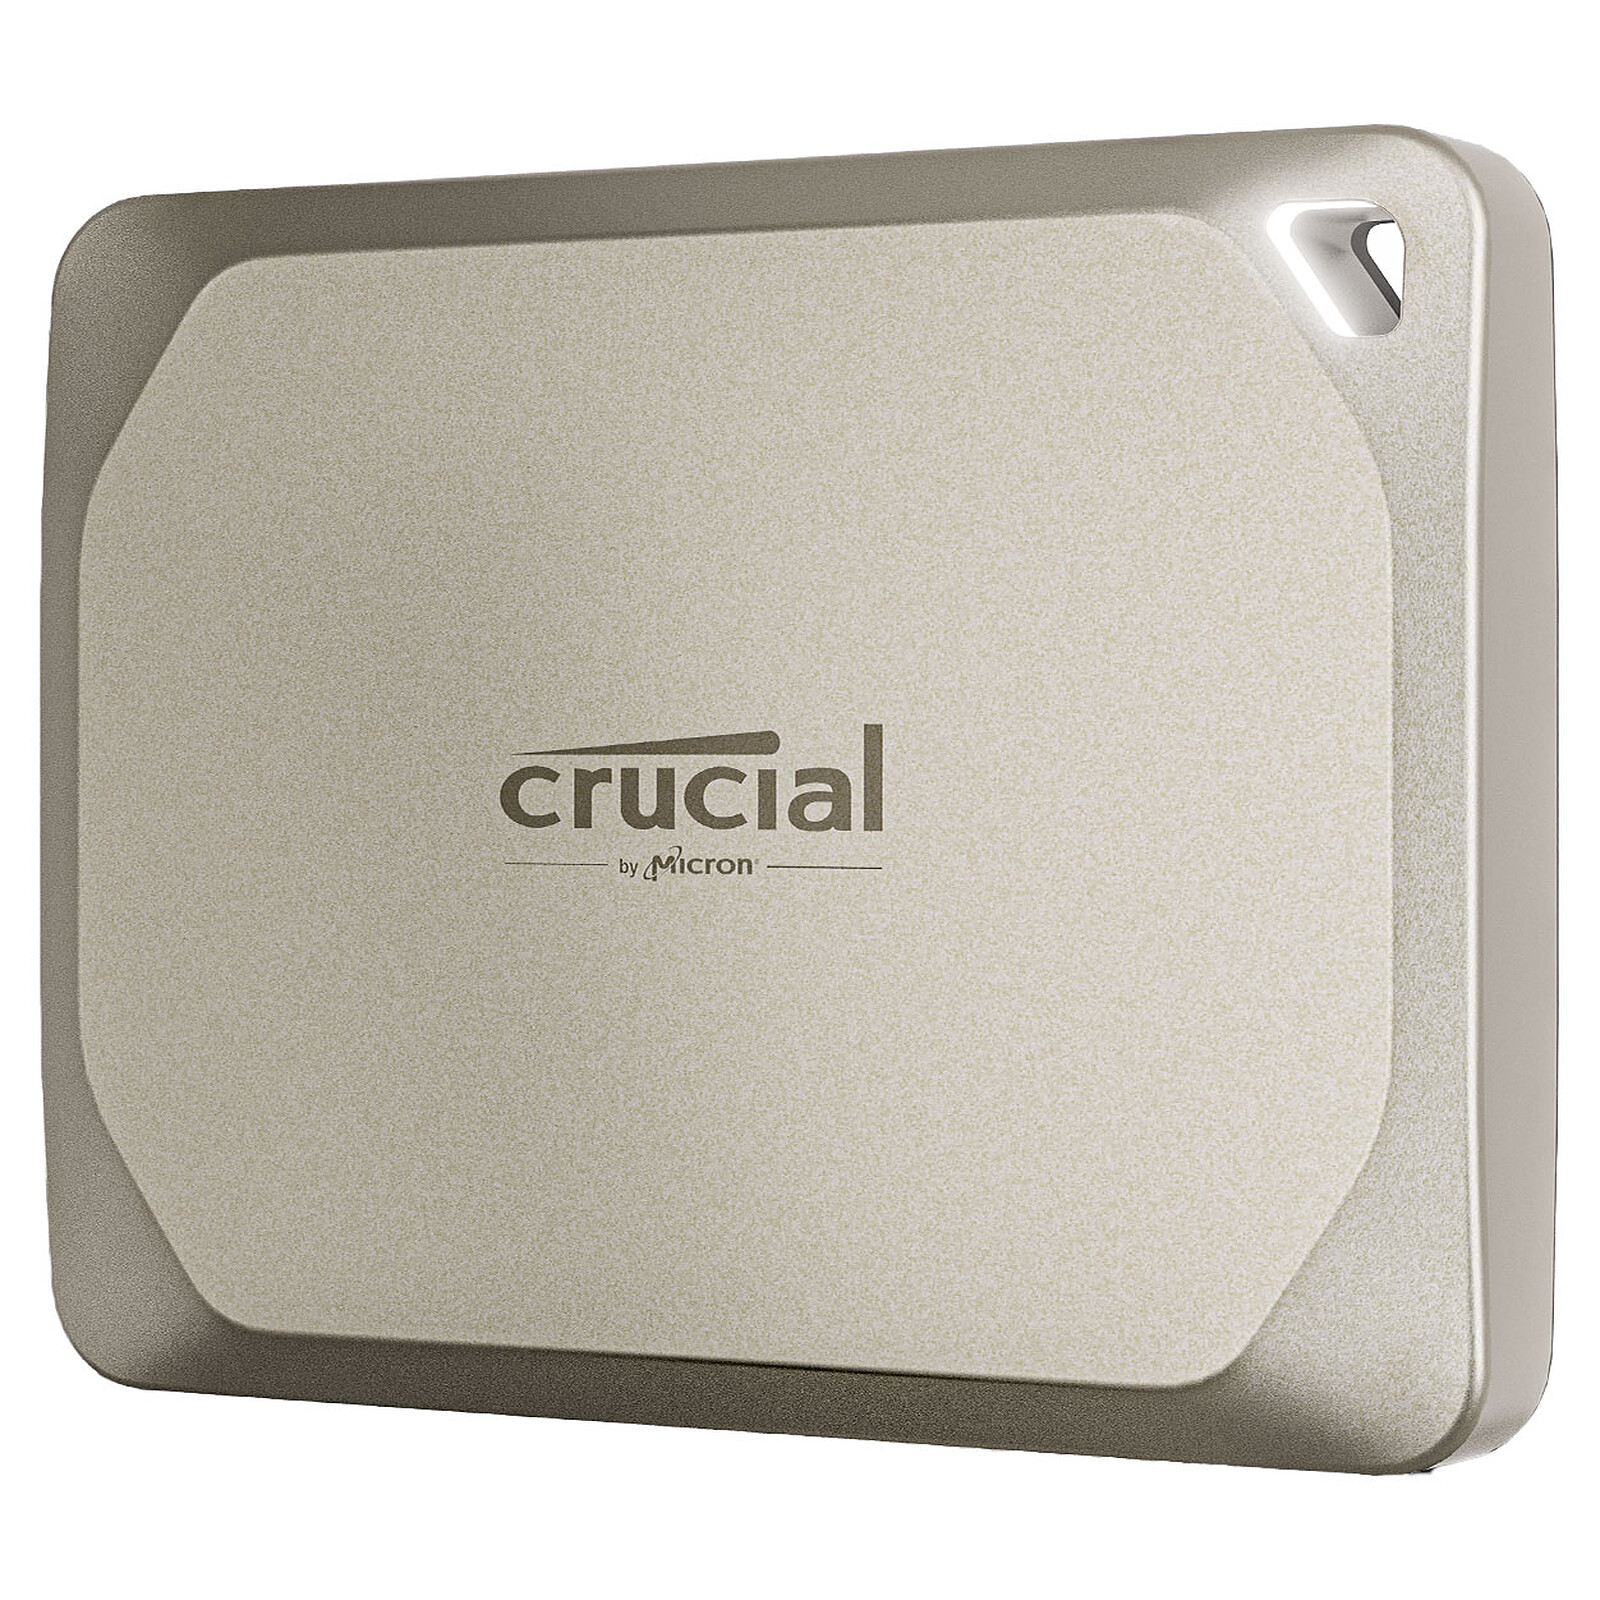 Crucial X6 Portable 2 To - Disque dur externe - LDLC